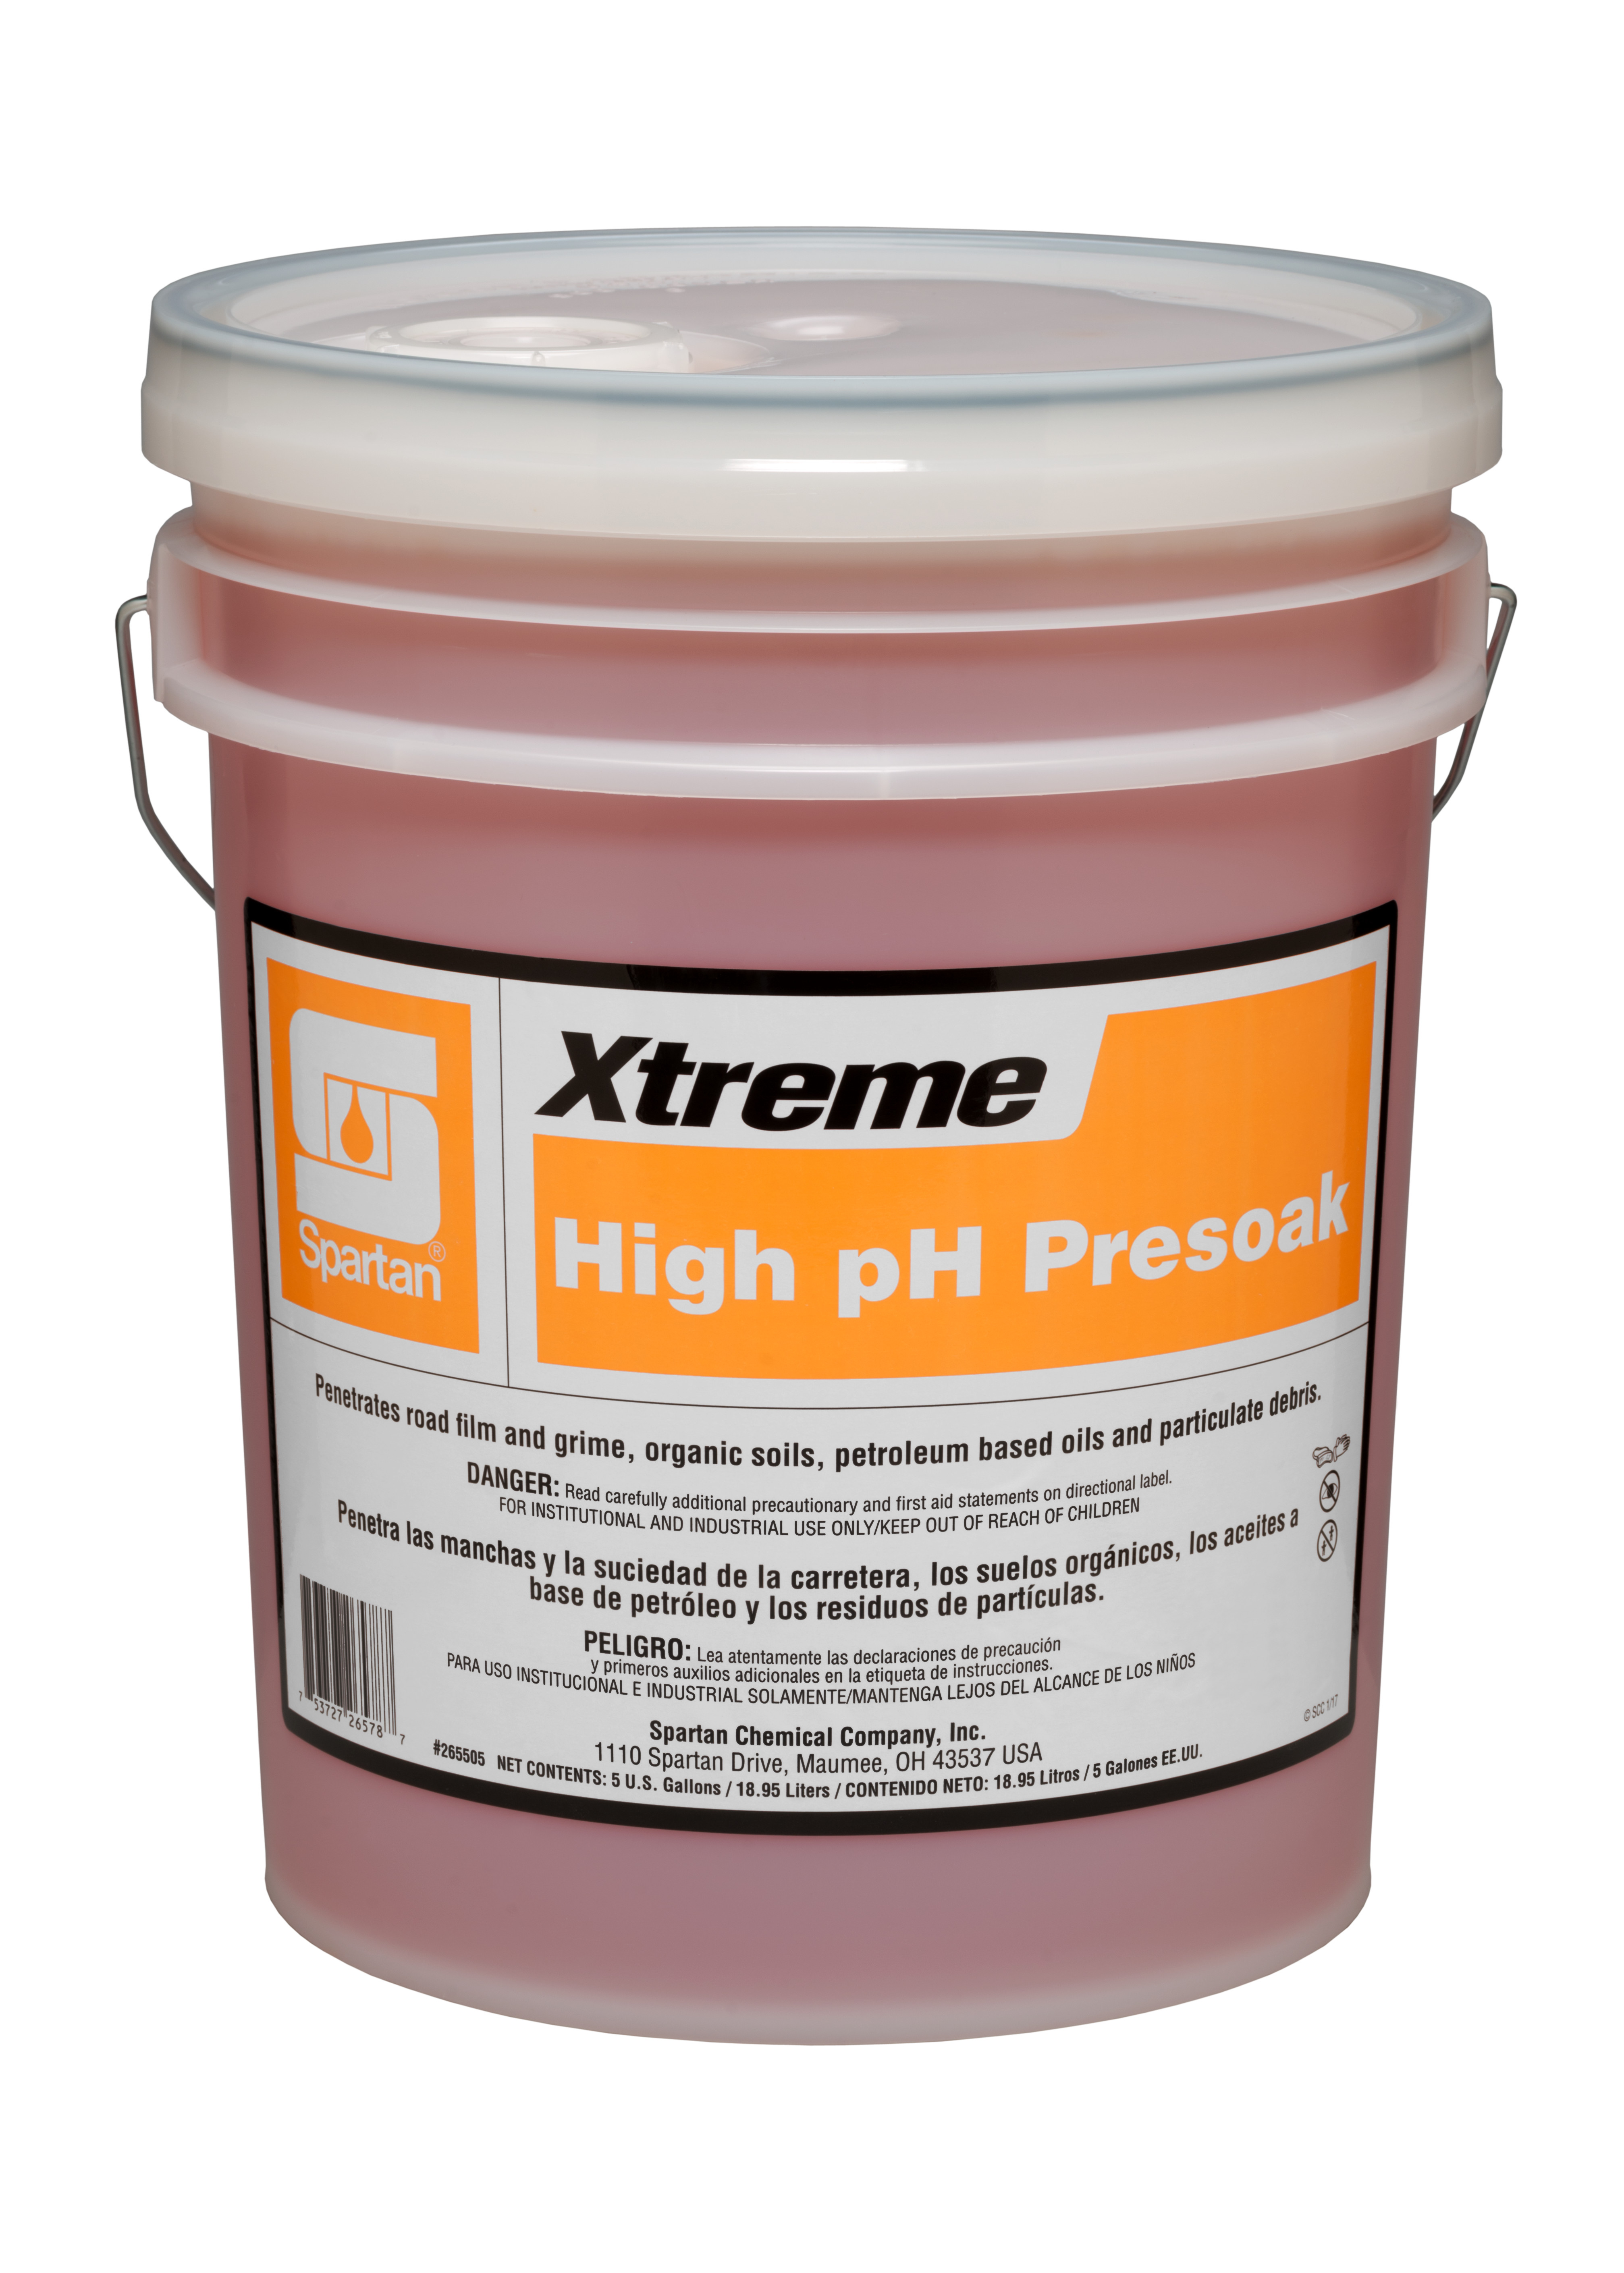 Spartan Chemical Company Xtreme High pH Presoak, 5 GAL PAIL